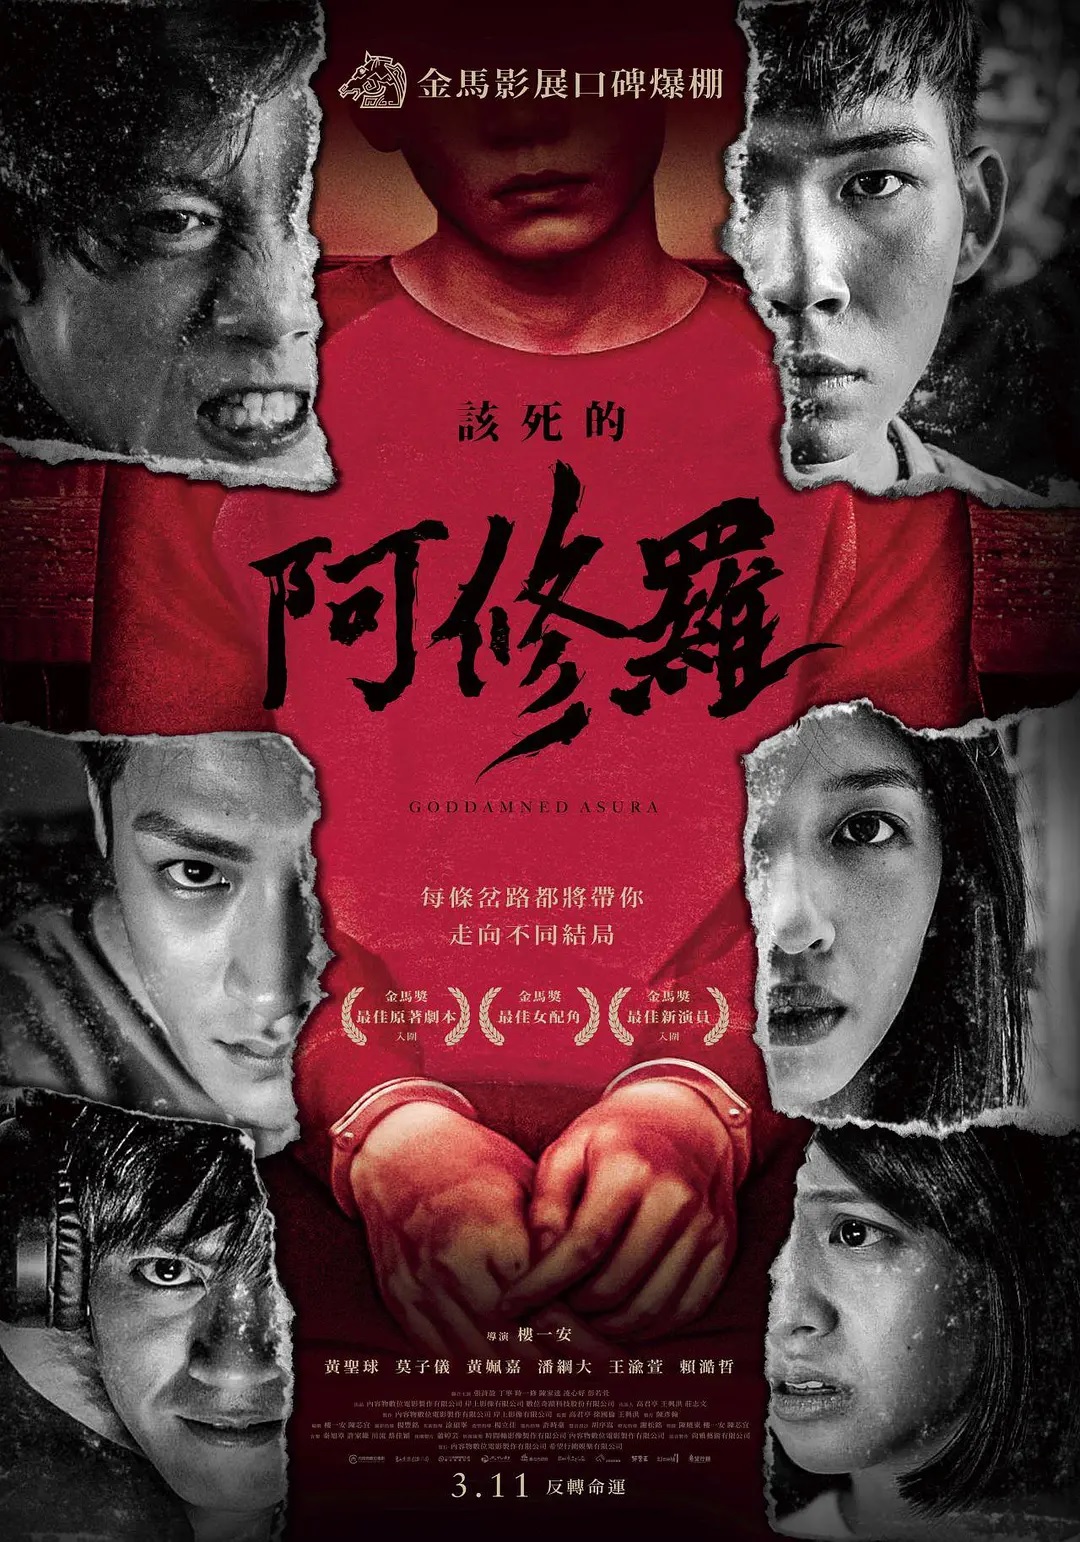 Goddamned Asura 该死的阿修罗 2021 Everything About Cinema Of Hong Kong China And Taiwan